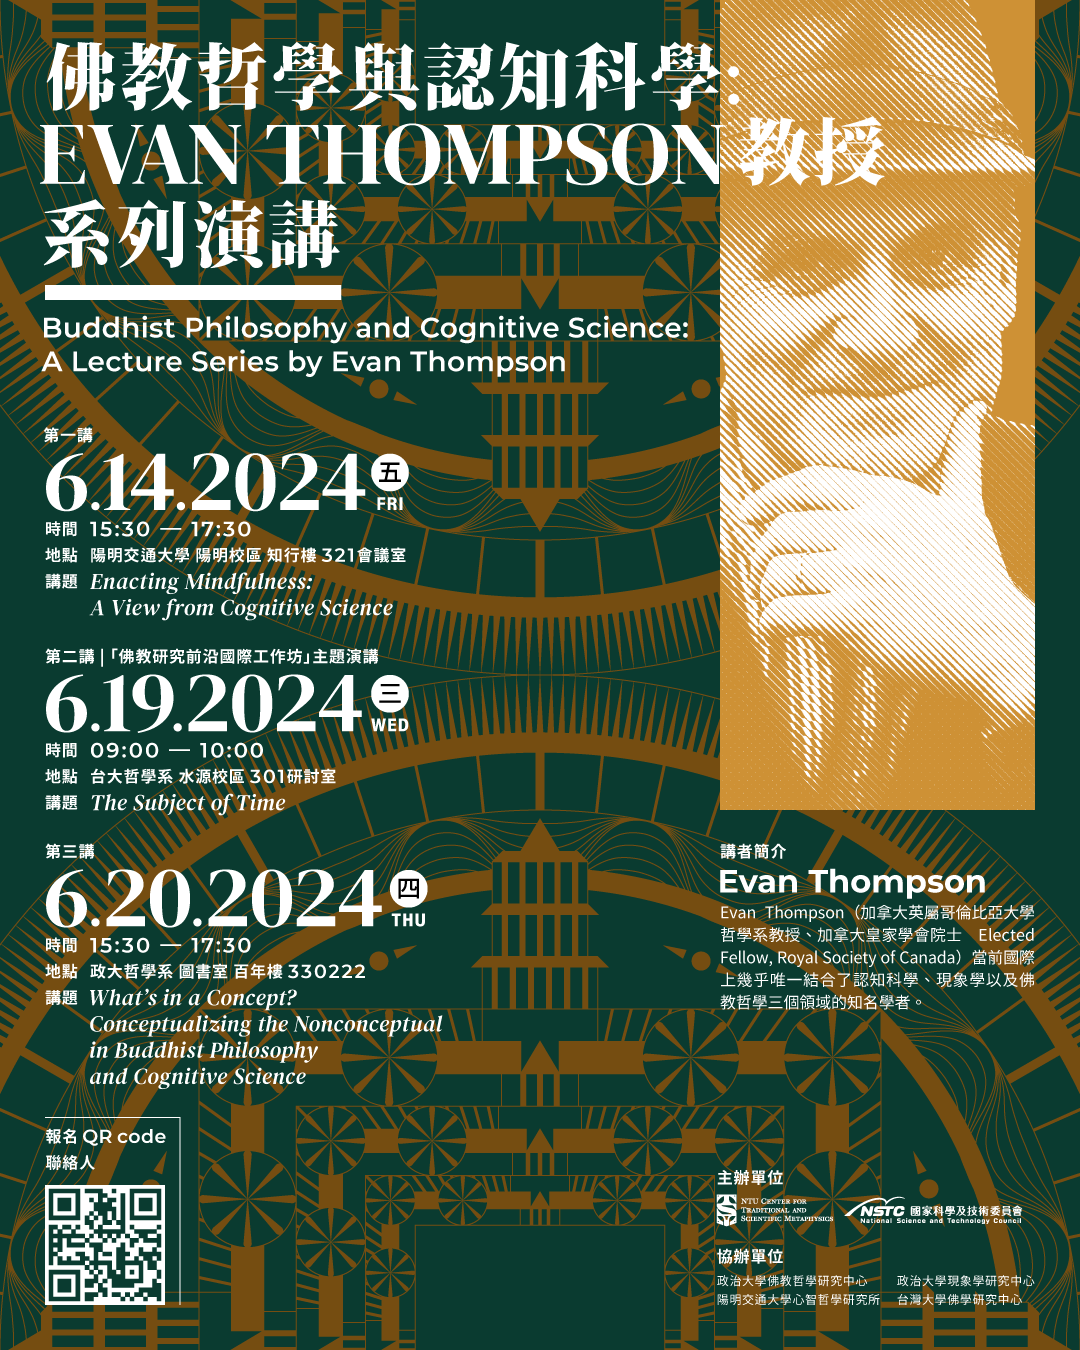 「佛教哲學與認知科學：Evan Thompson 教授系列演講」（Buddhist Philosophy and Cognitive Science: A Lecture Series by Evan Thompson）